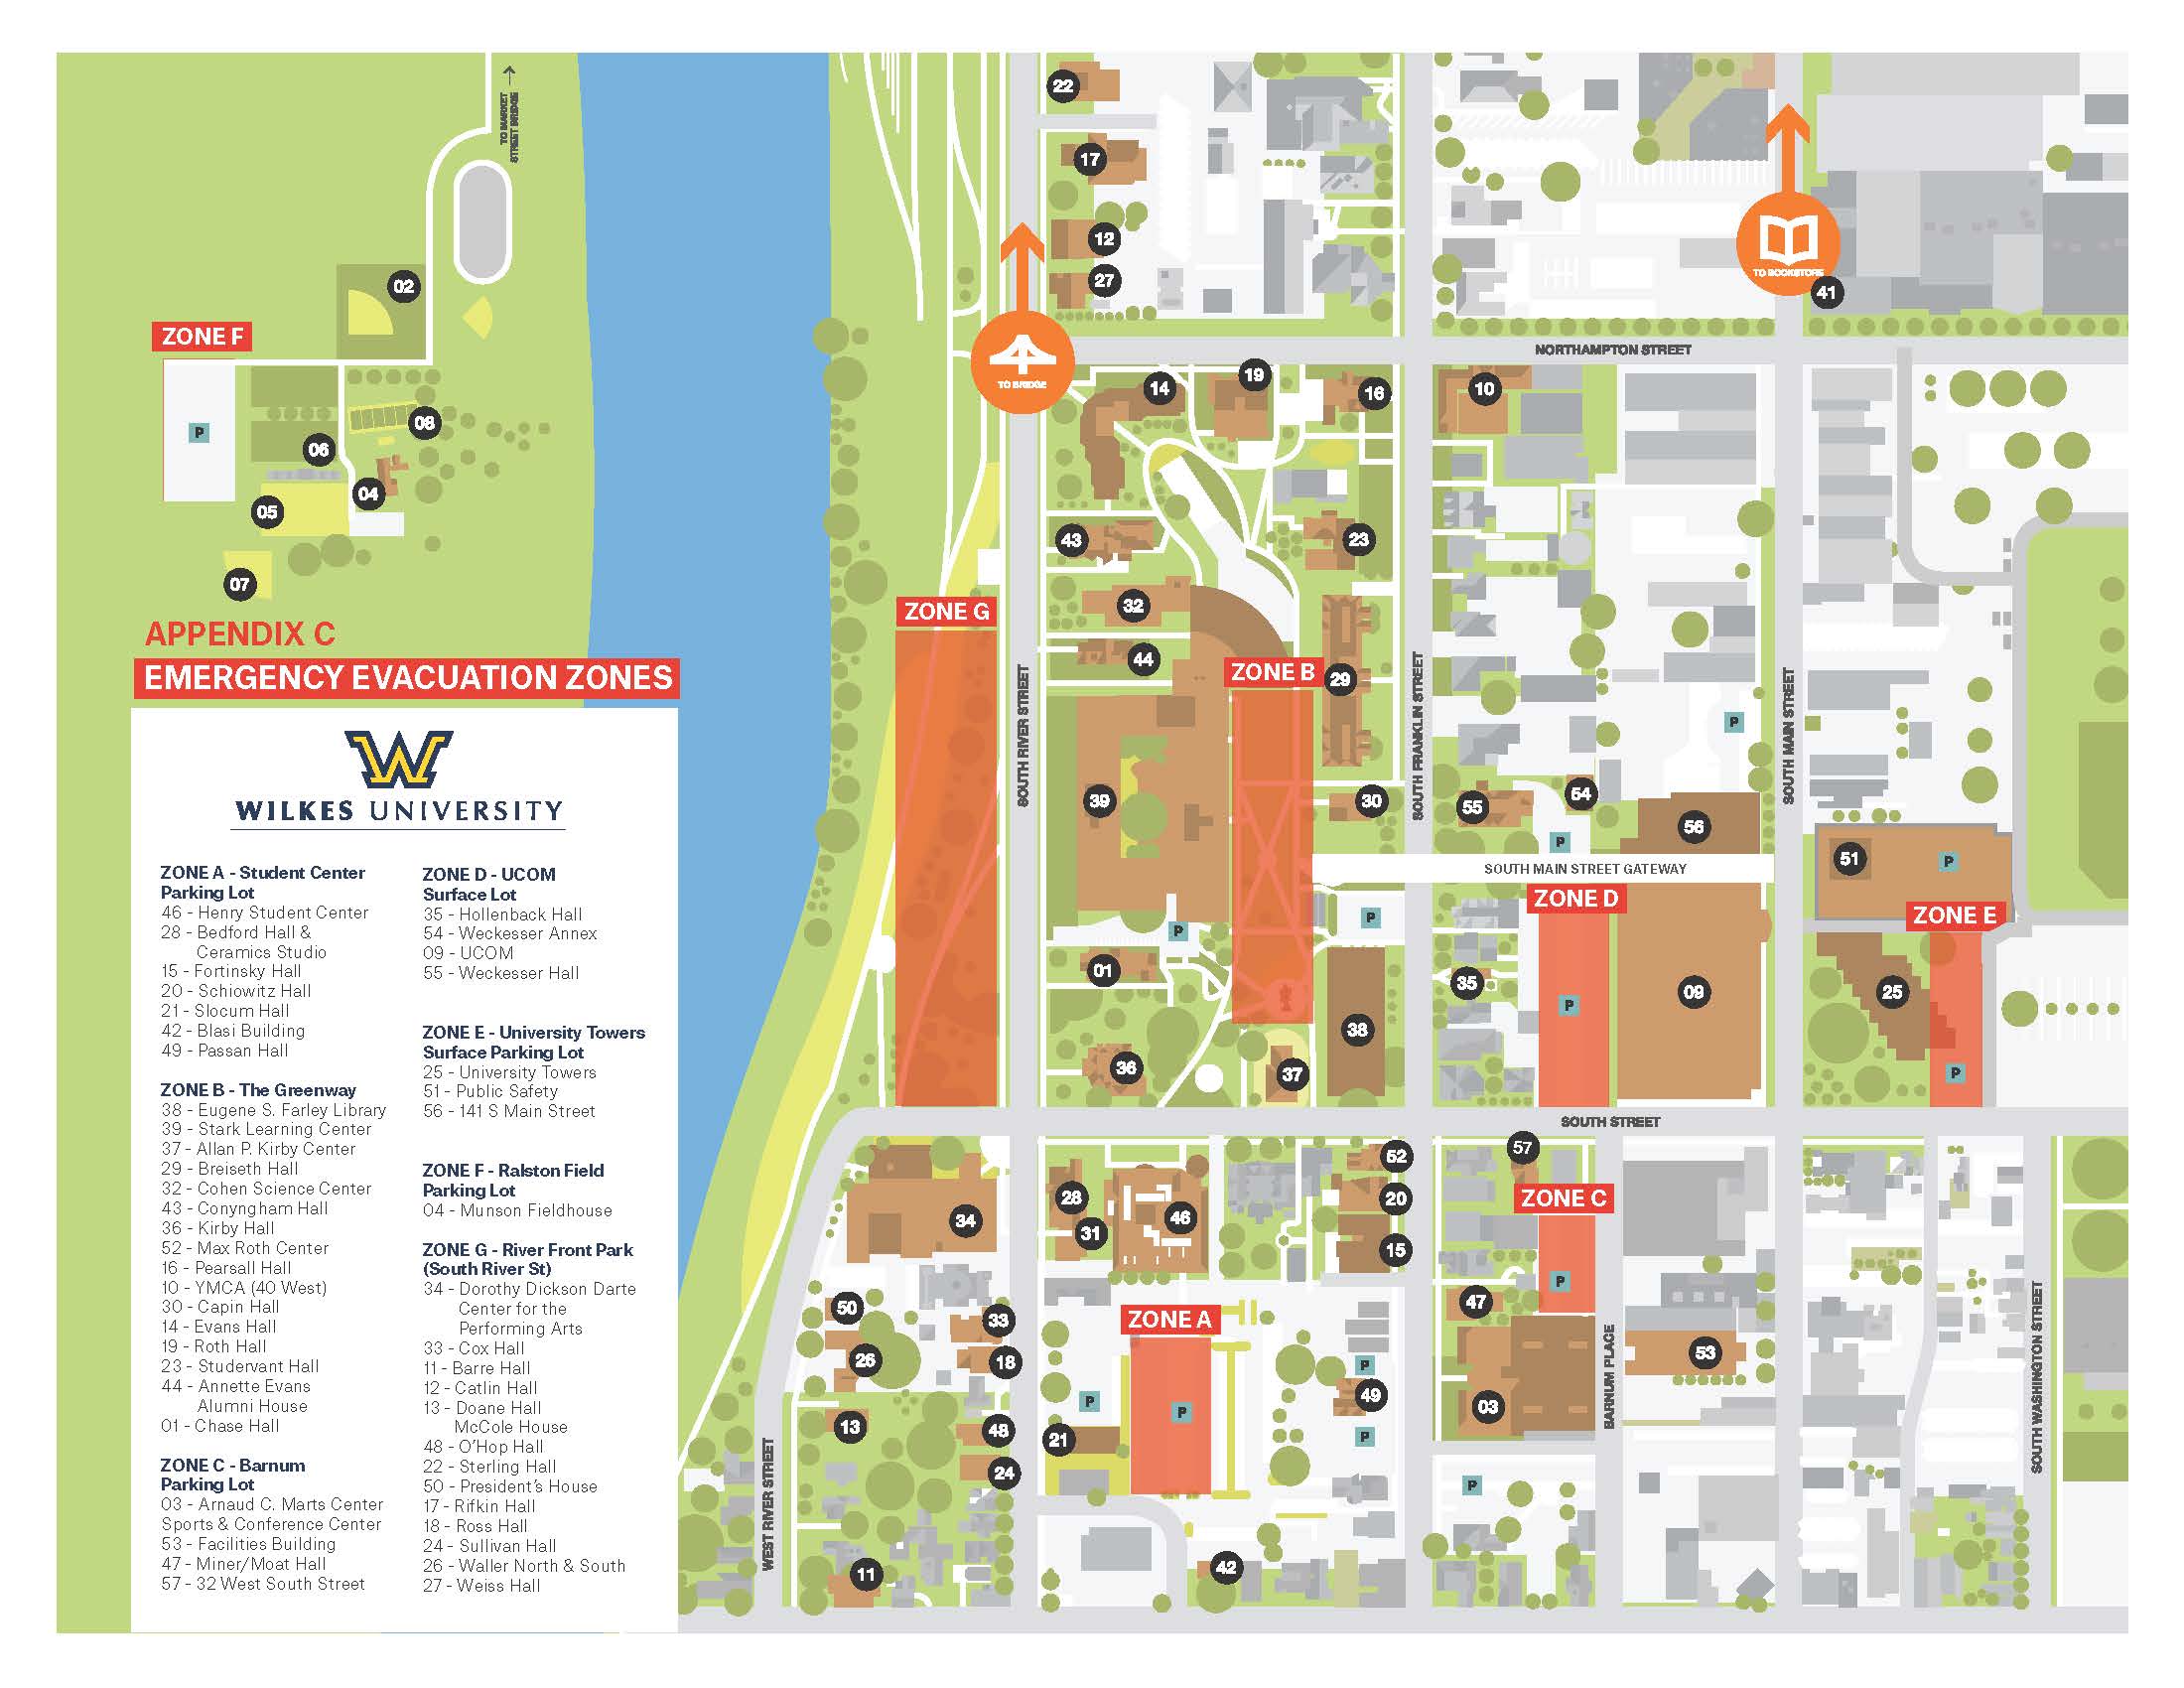 Campus Emergency Evacuation Zones Map